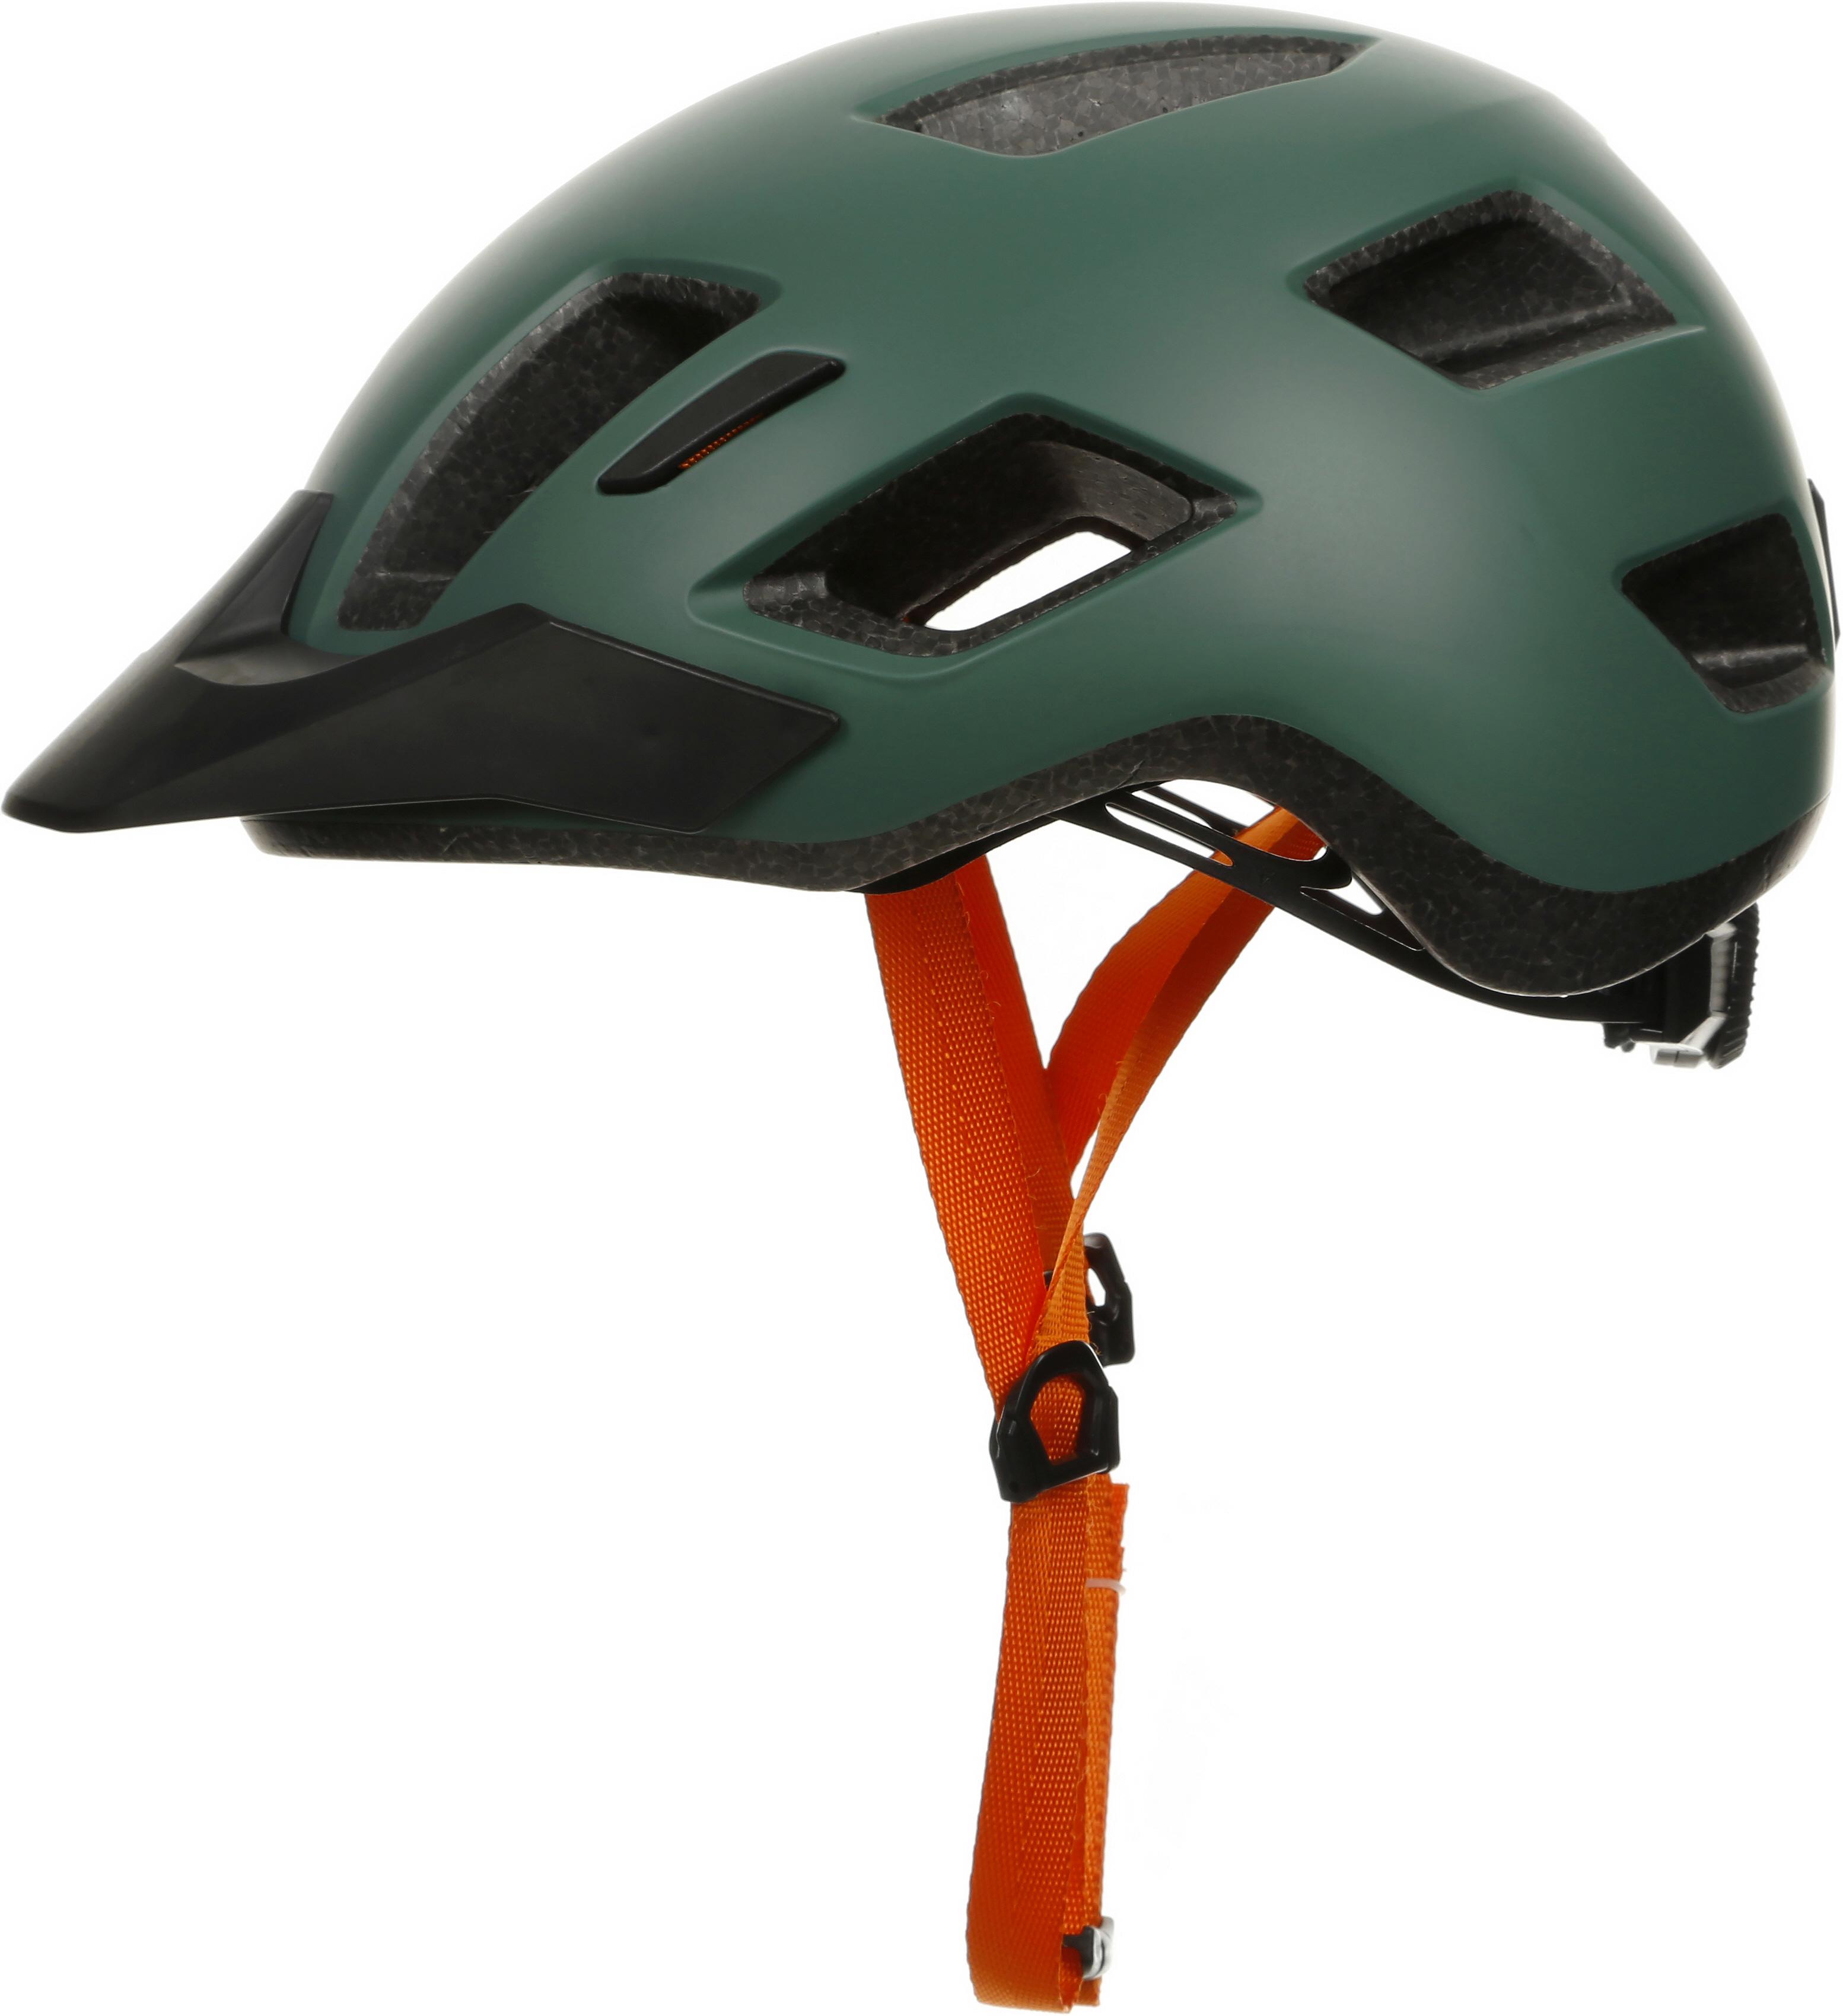 Halfords Transfer Helmet, Earth Green - Medium